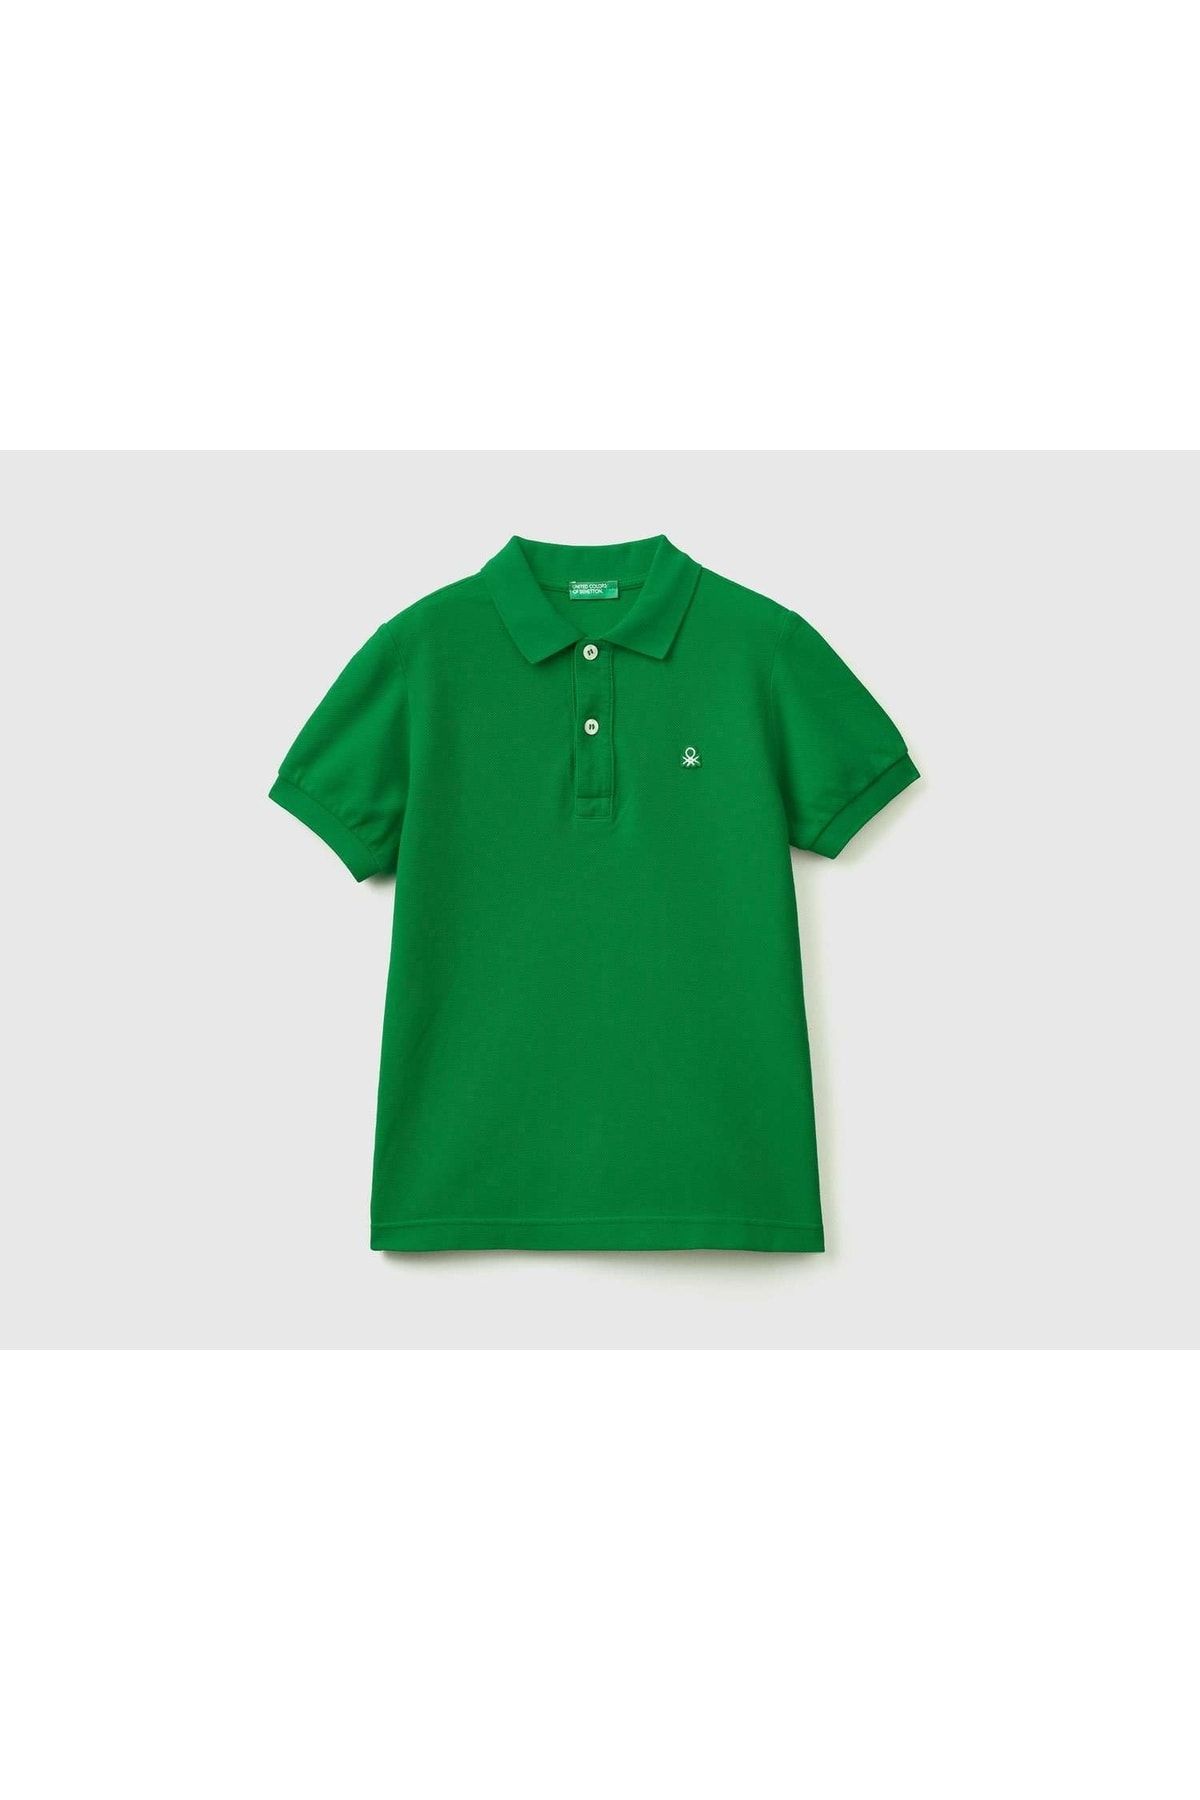 United Colors of Benetton Erkek Çocuk Yeşil Logolu Polo T-shirt